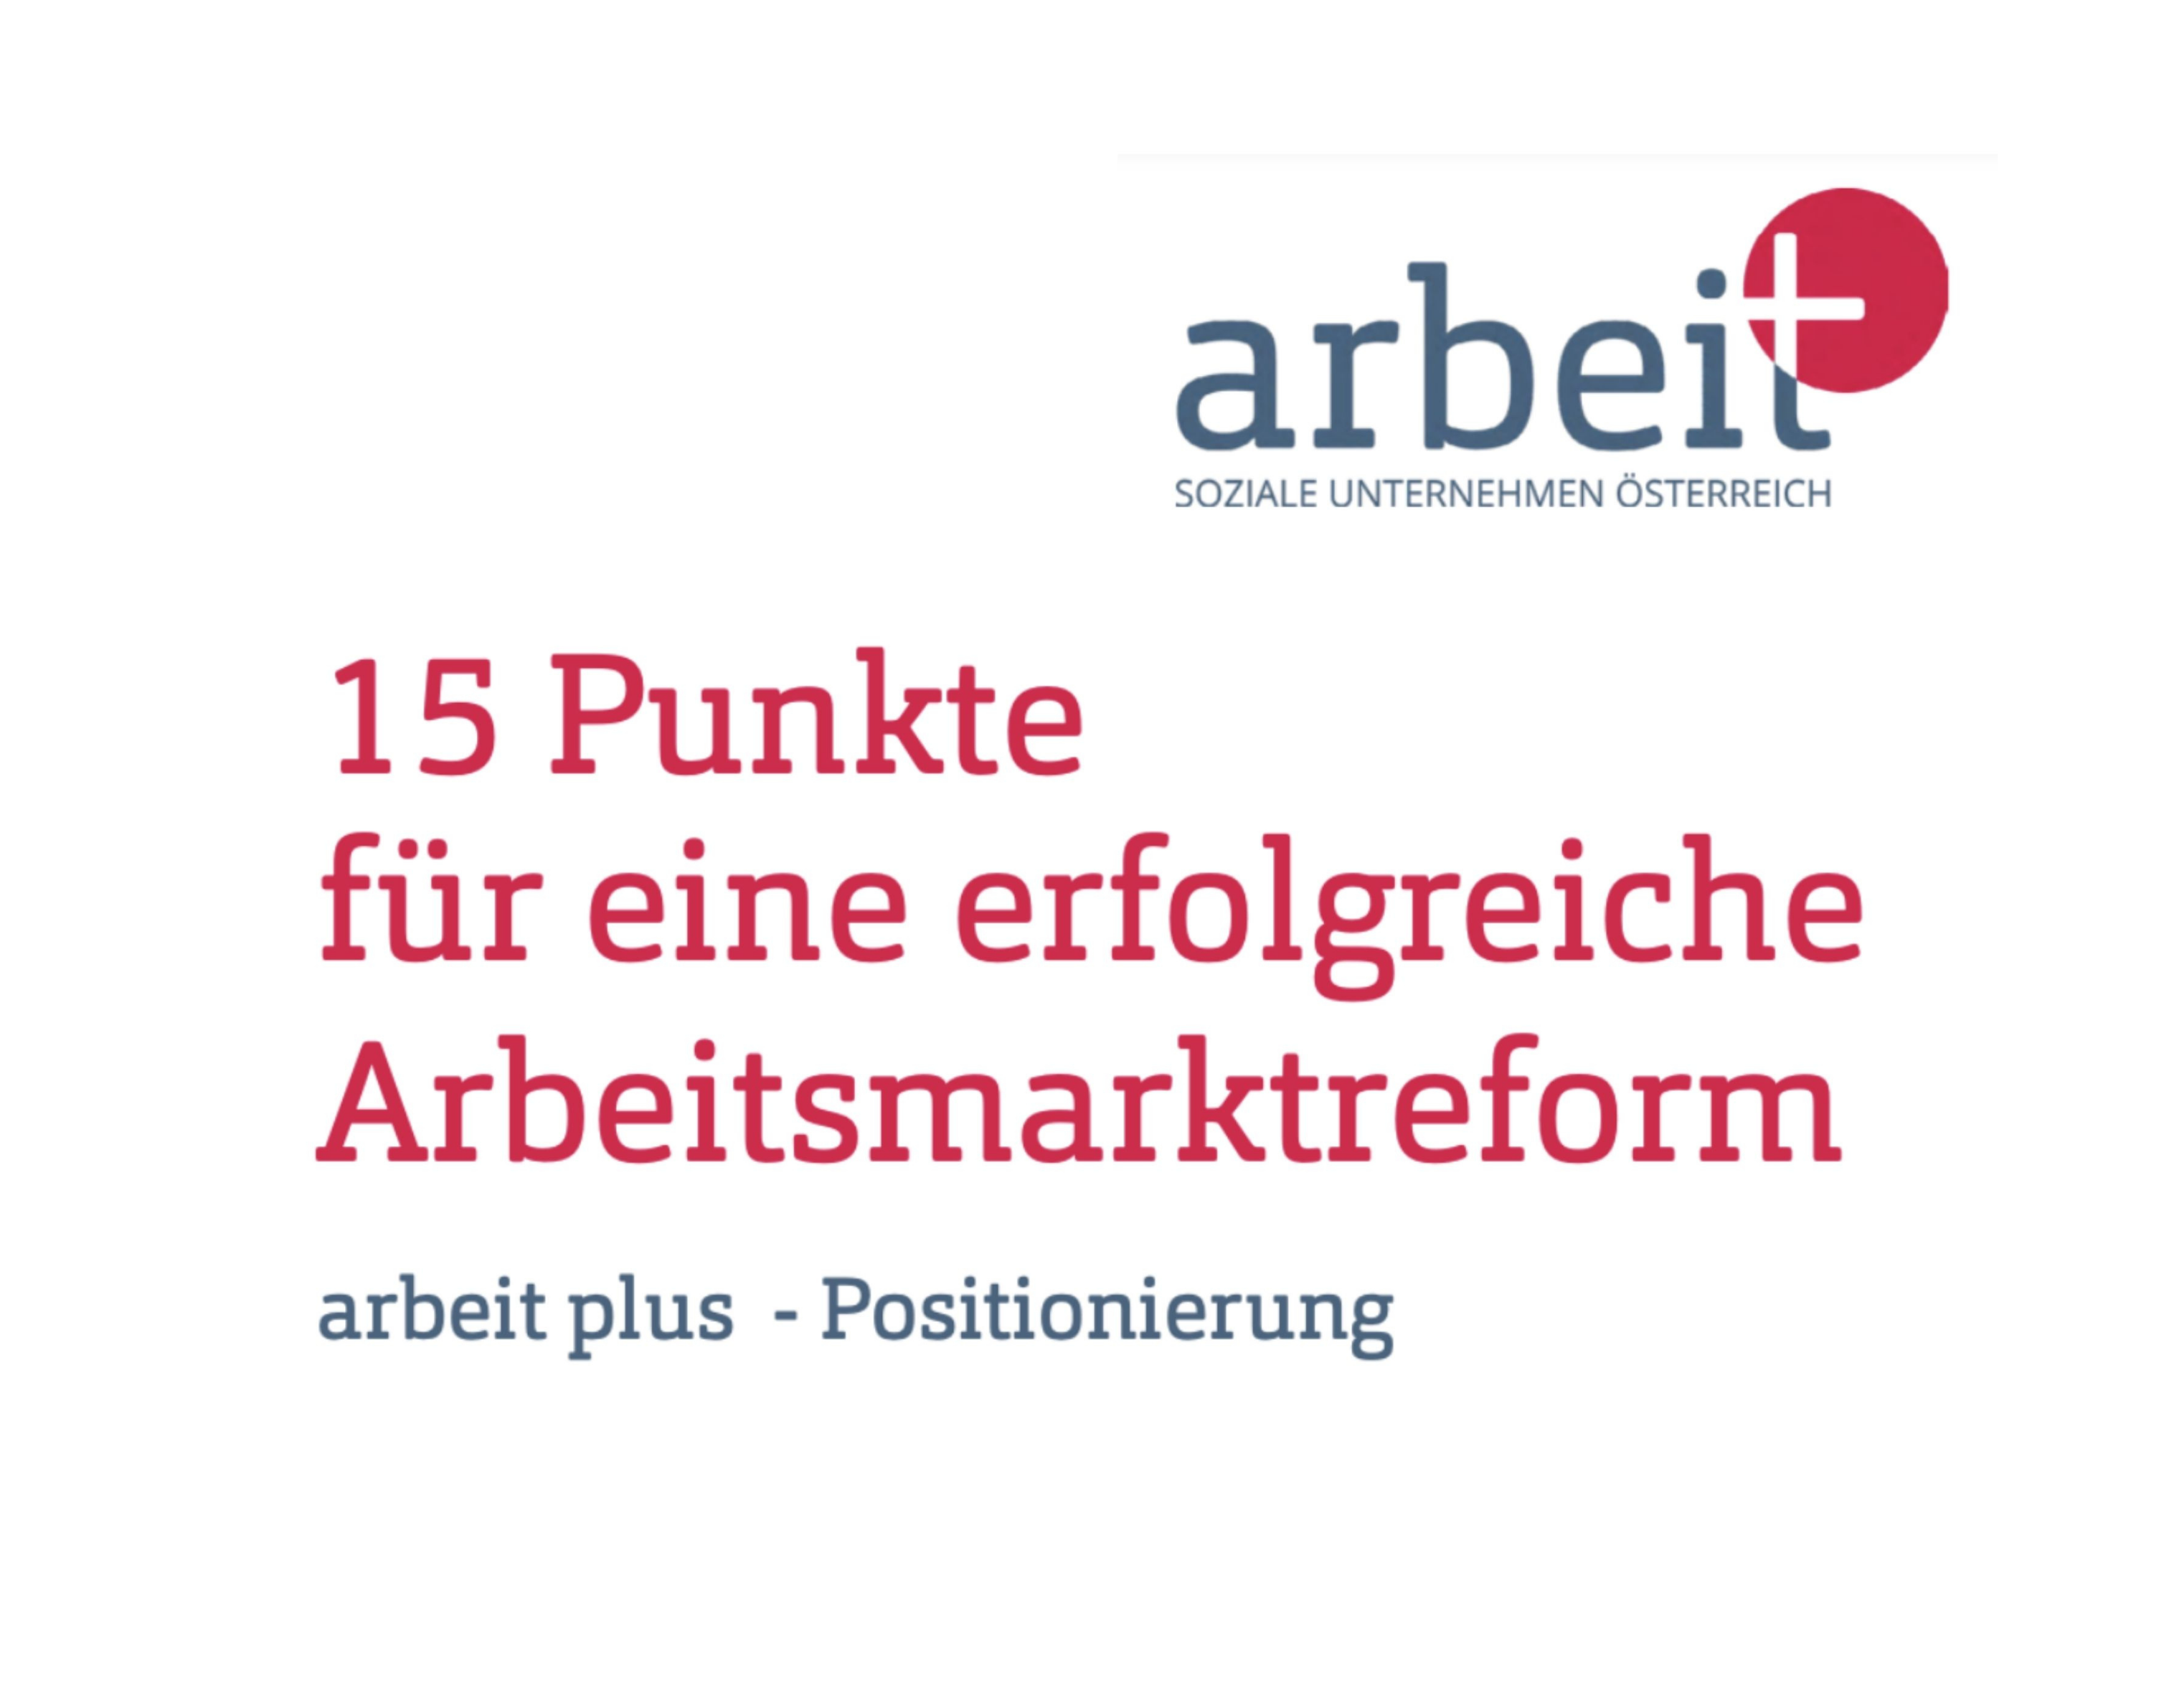 Titel: "15 Punkte für eine erfolgreiche Arbeitsmarktreform", Untertitel "arbeit plus - Positionierung"